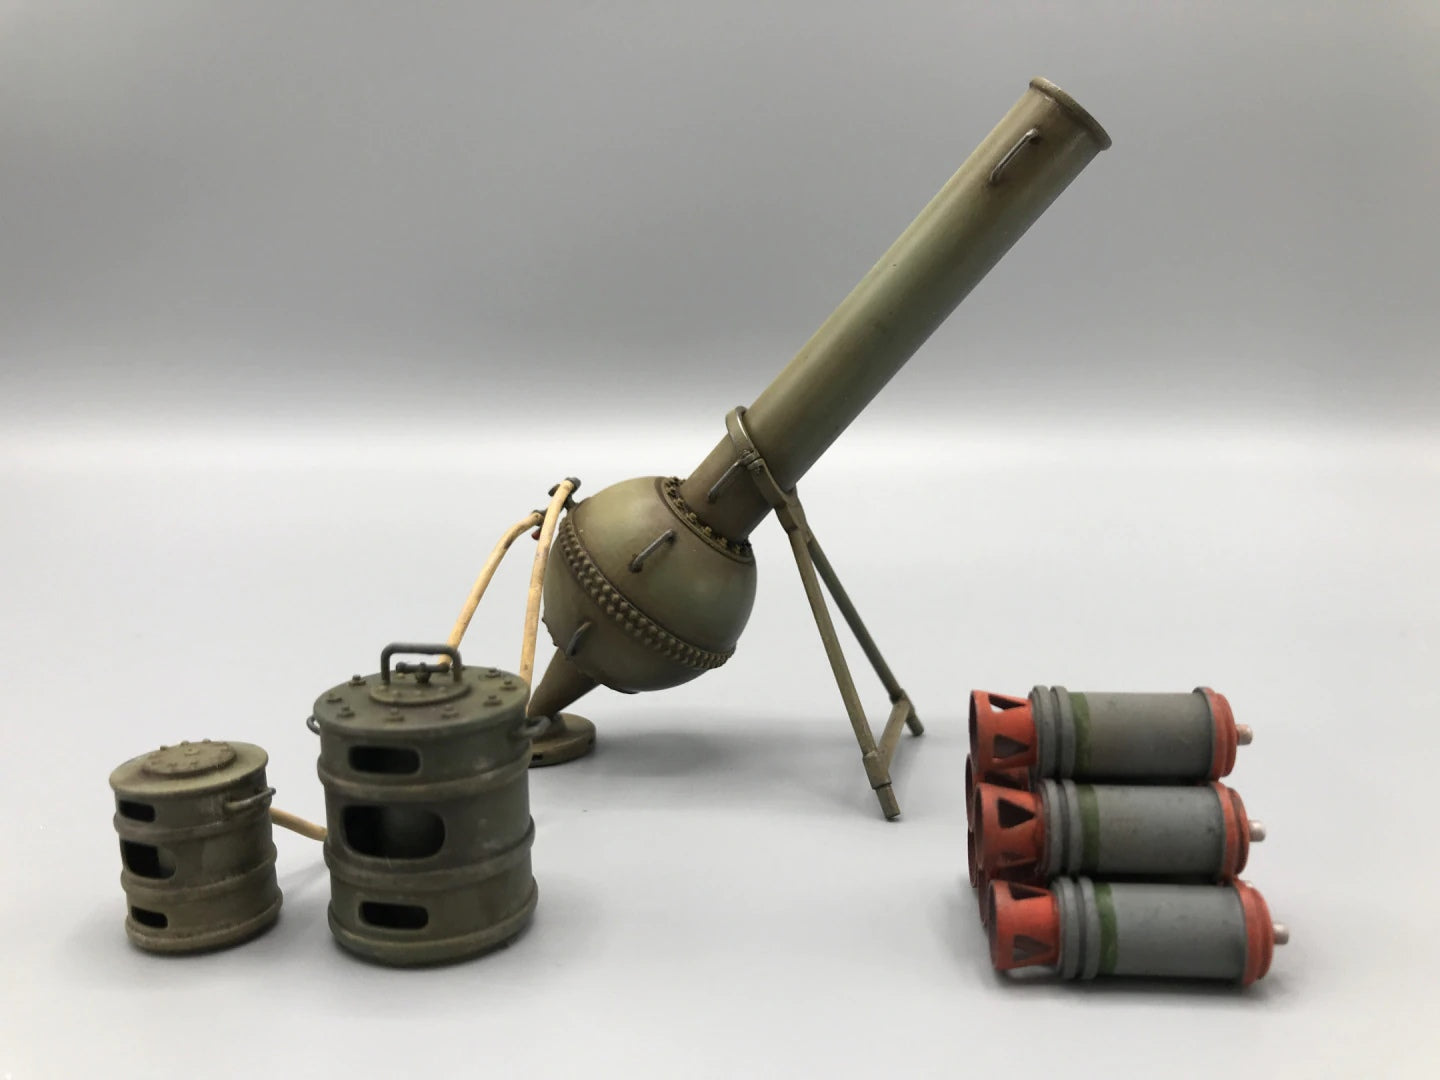 1/35 Italian 320mm Acetylene Mortar WW1